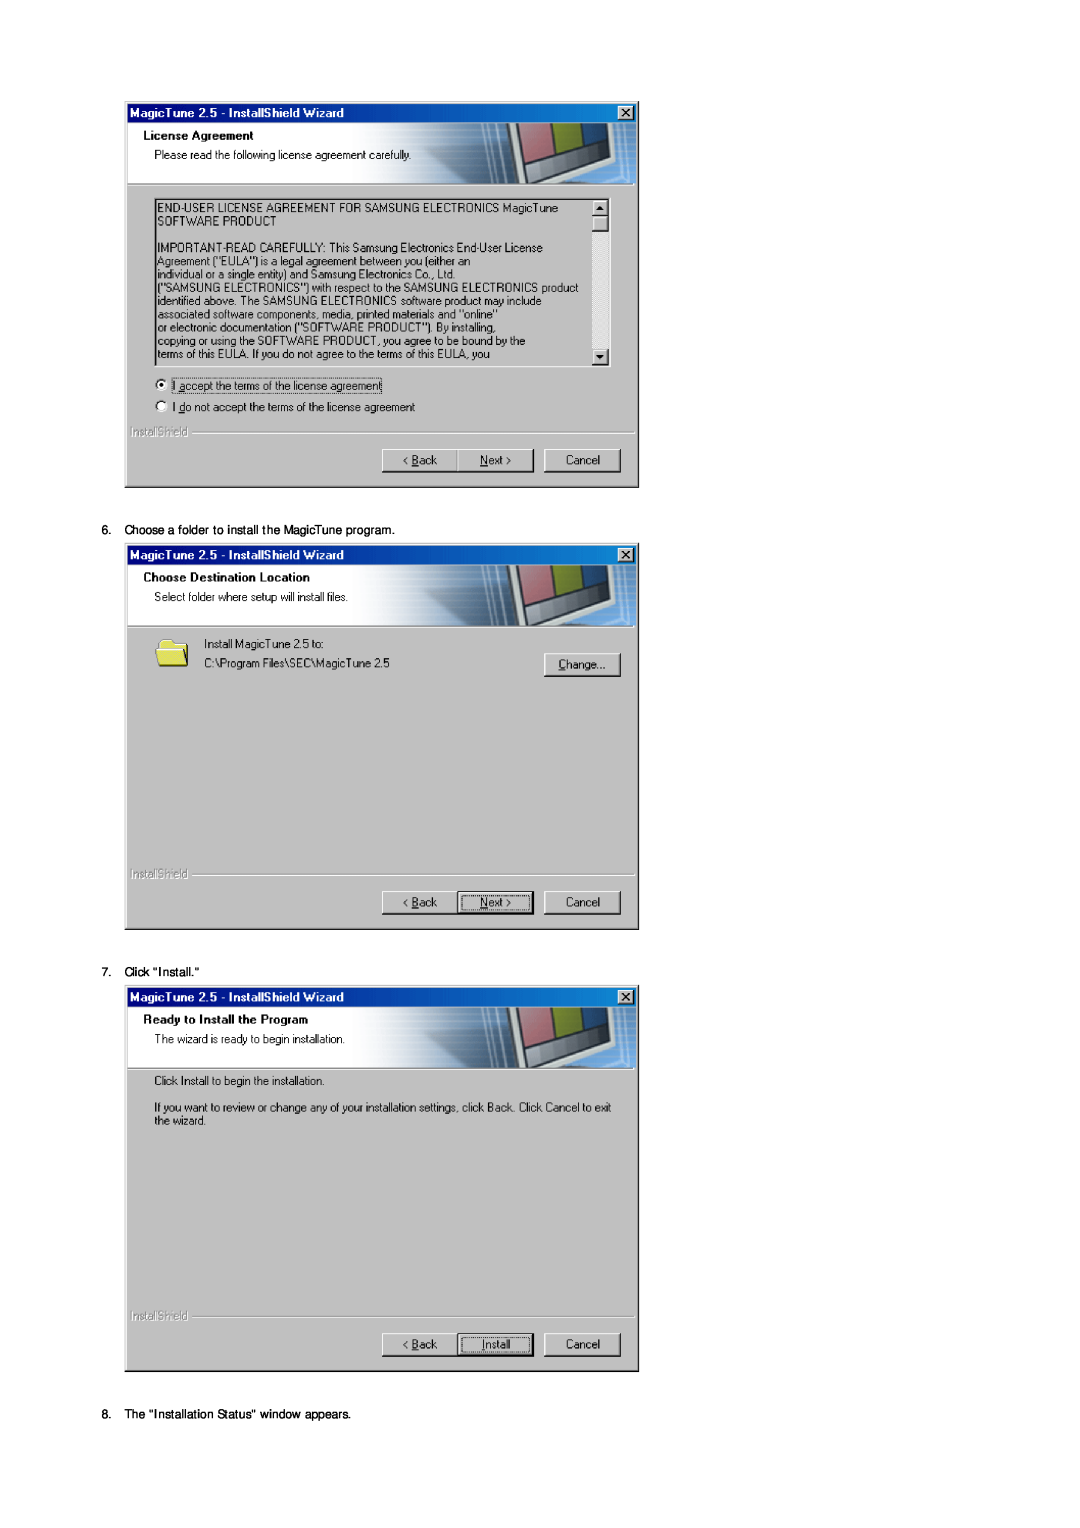 Samsung MJ19ESTB/XSJ, LS19MJETS/XSJ, MJ19ESTN/XSJ manual Choose a folder to install the MagicTune program 7. Click Install 